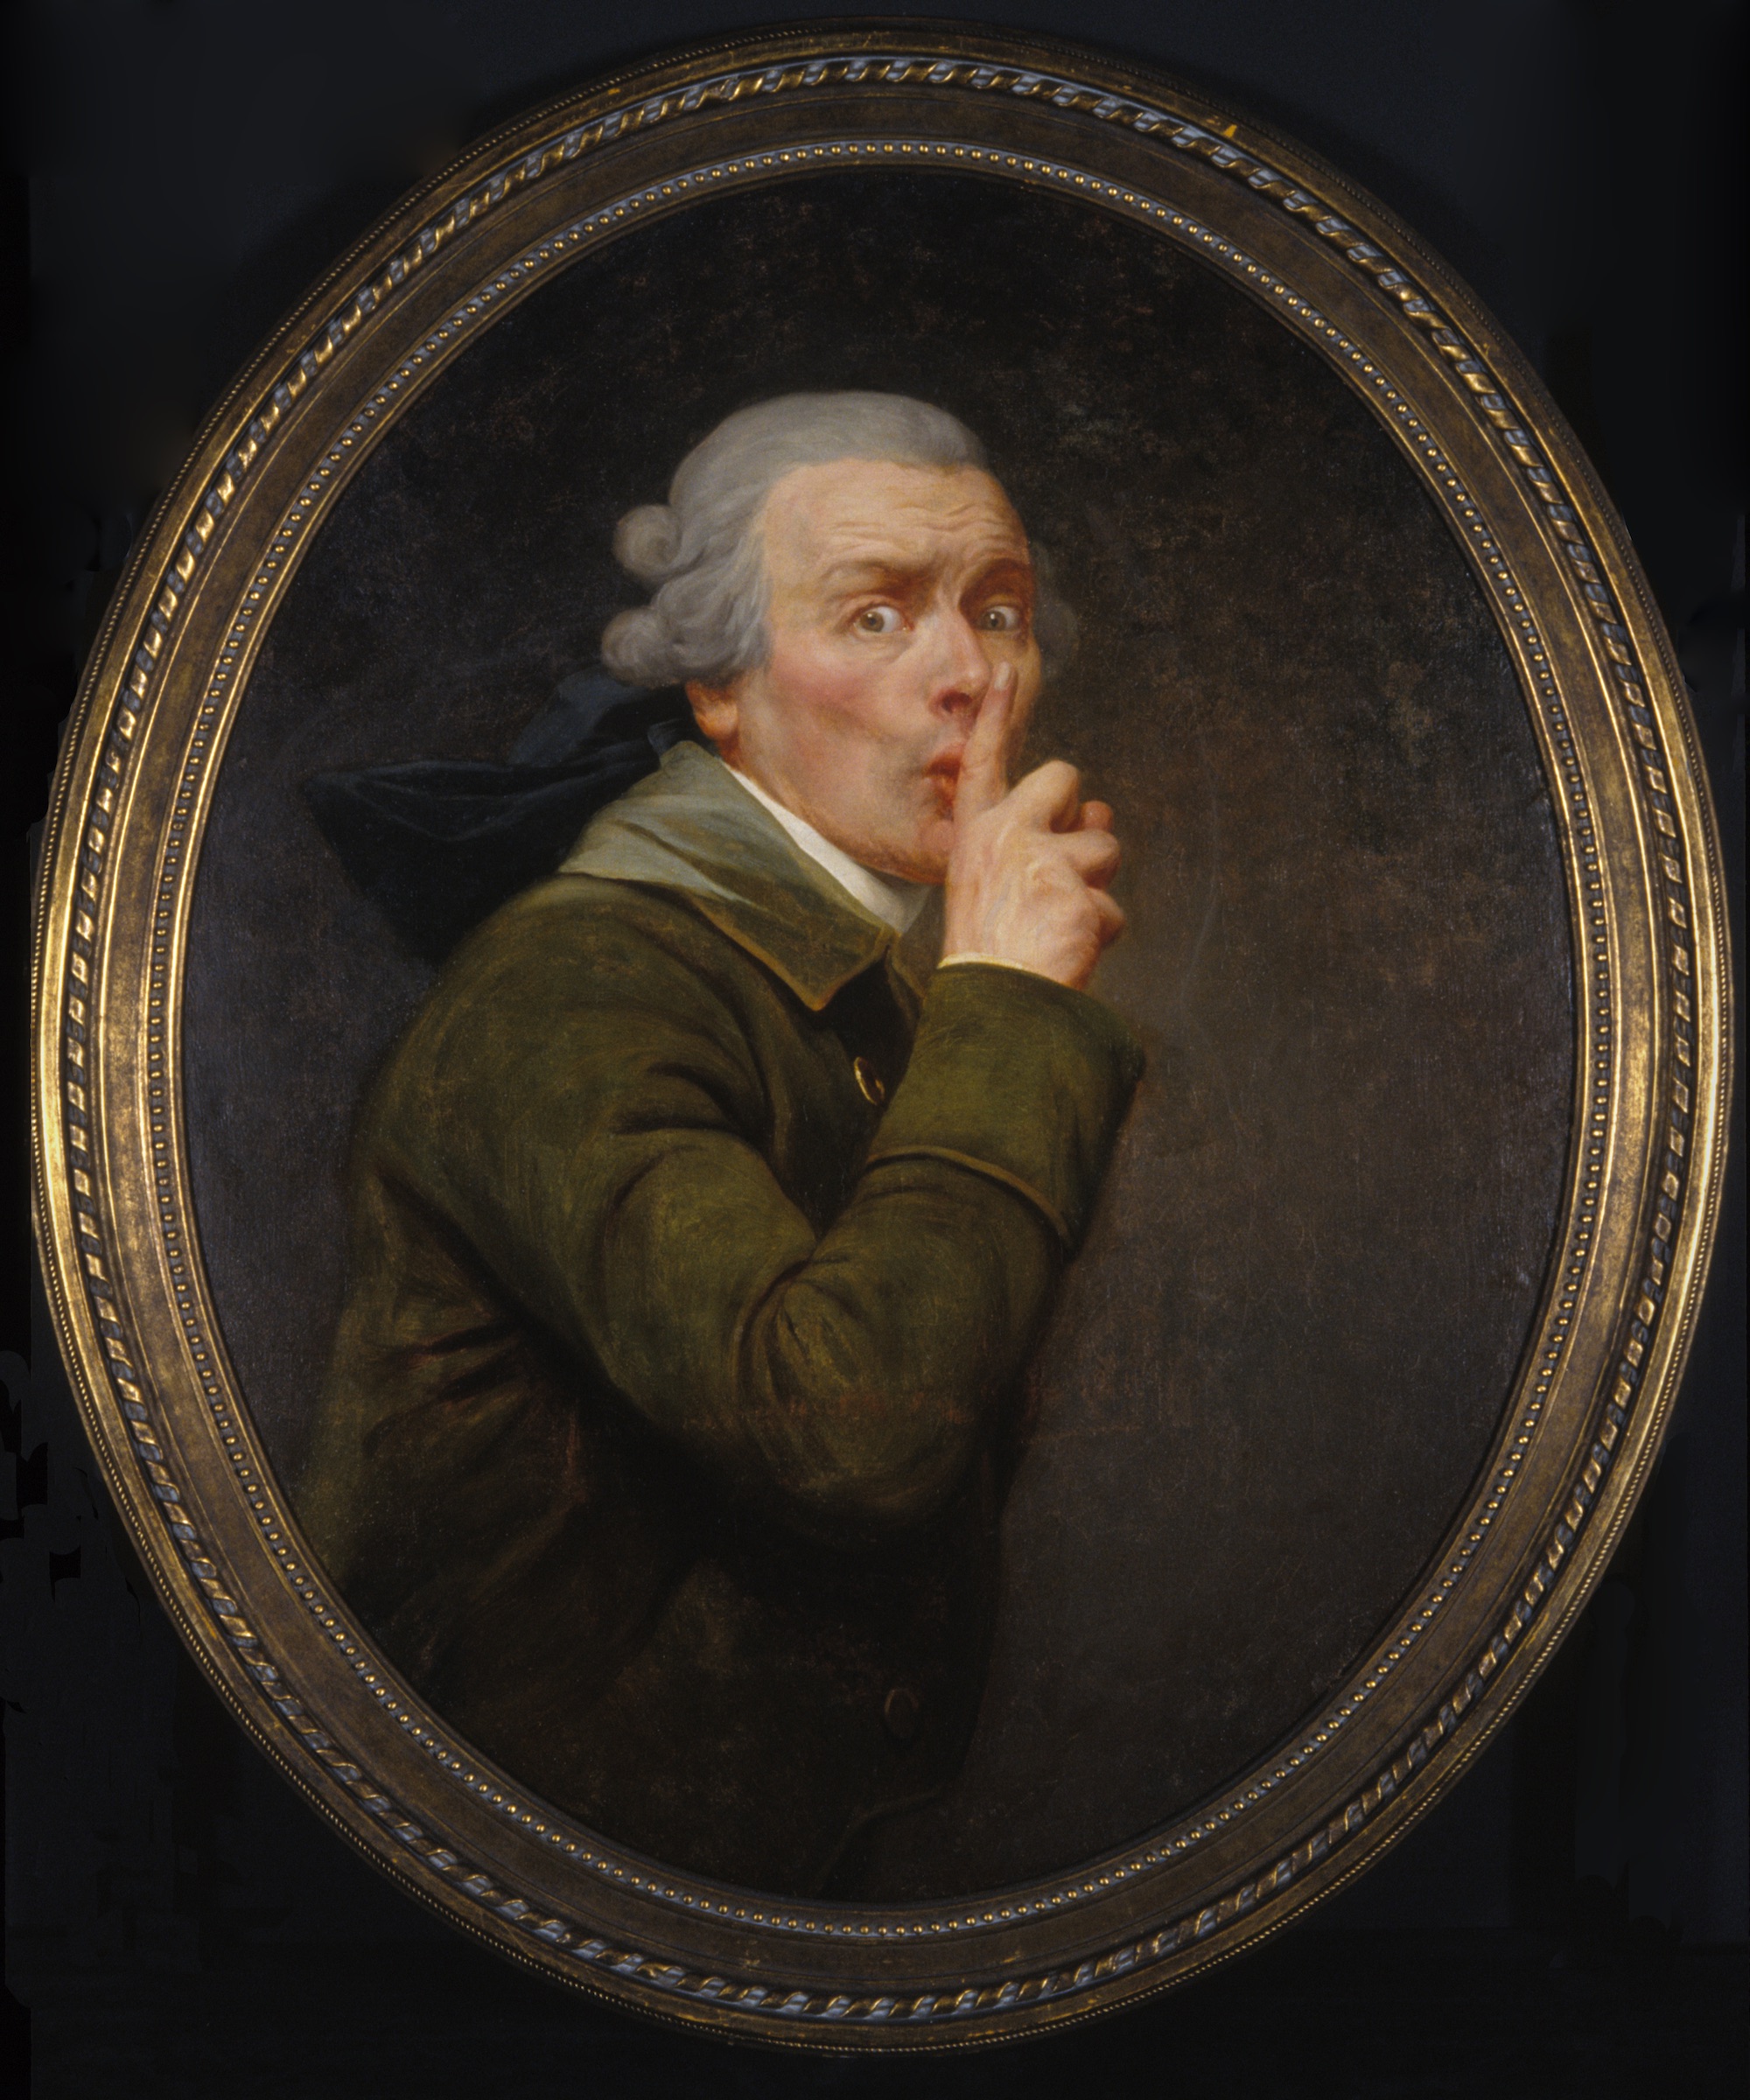 신중함  by Joseph Ducreux - 대략 1791년 - 91.6 x 79.9 cm 